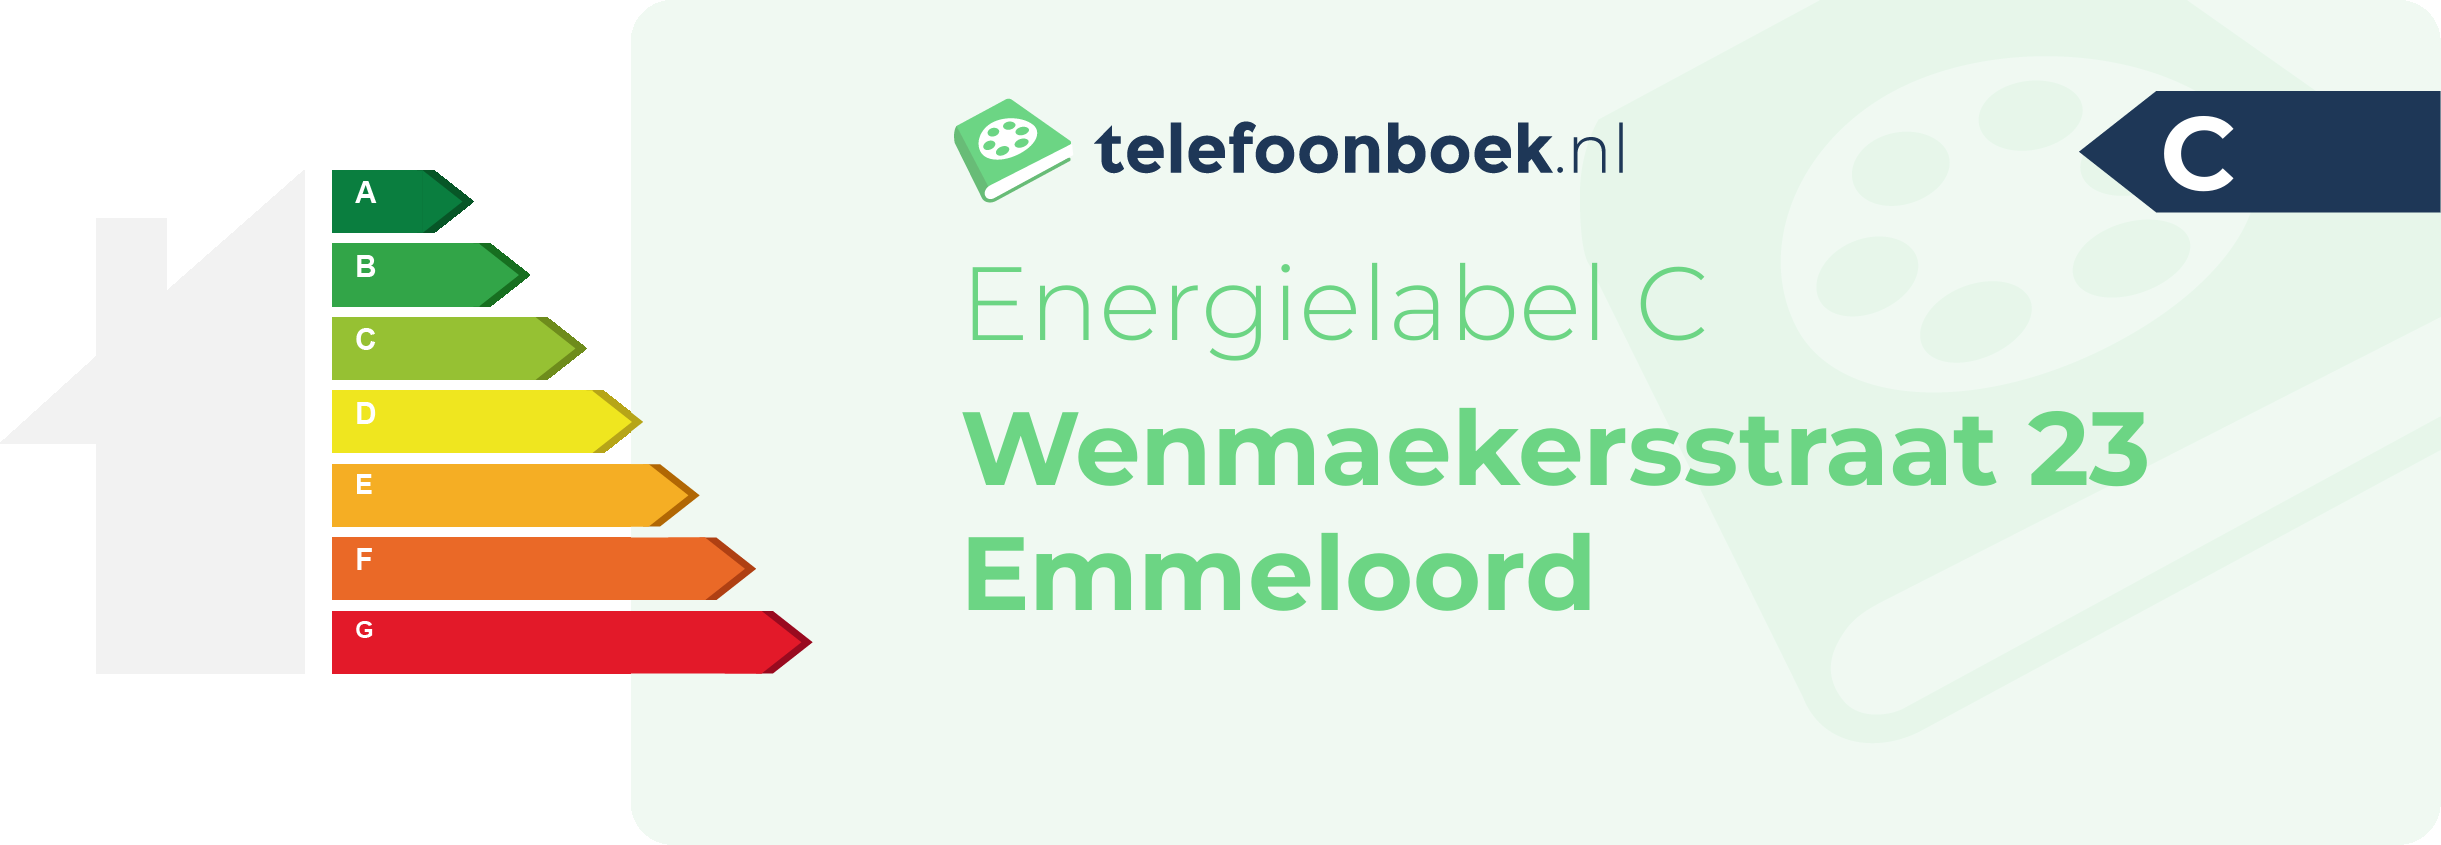 Energielabel Wenmaekersstraat 23 Emmeloord